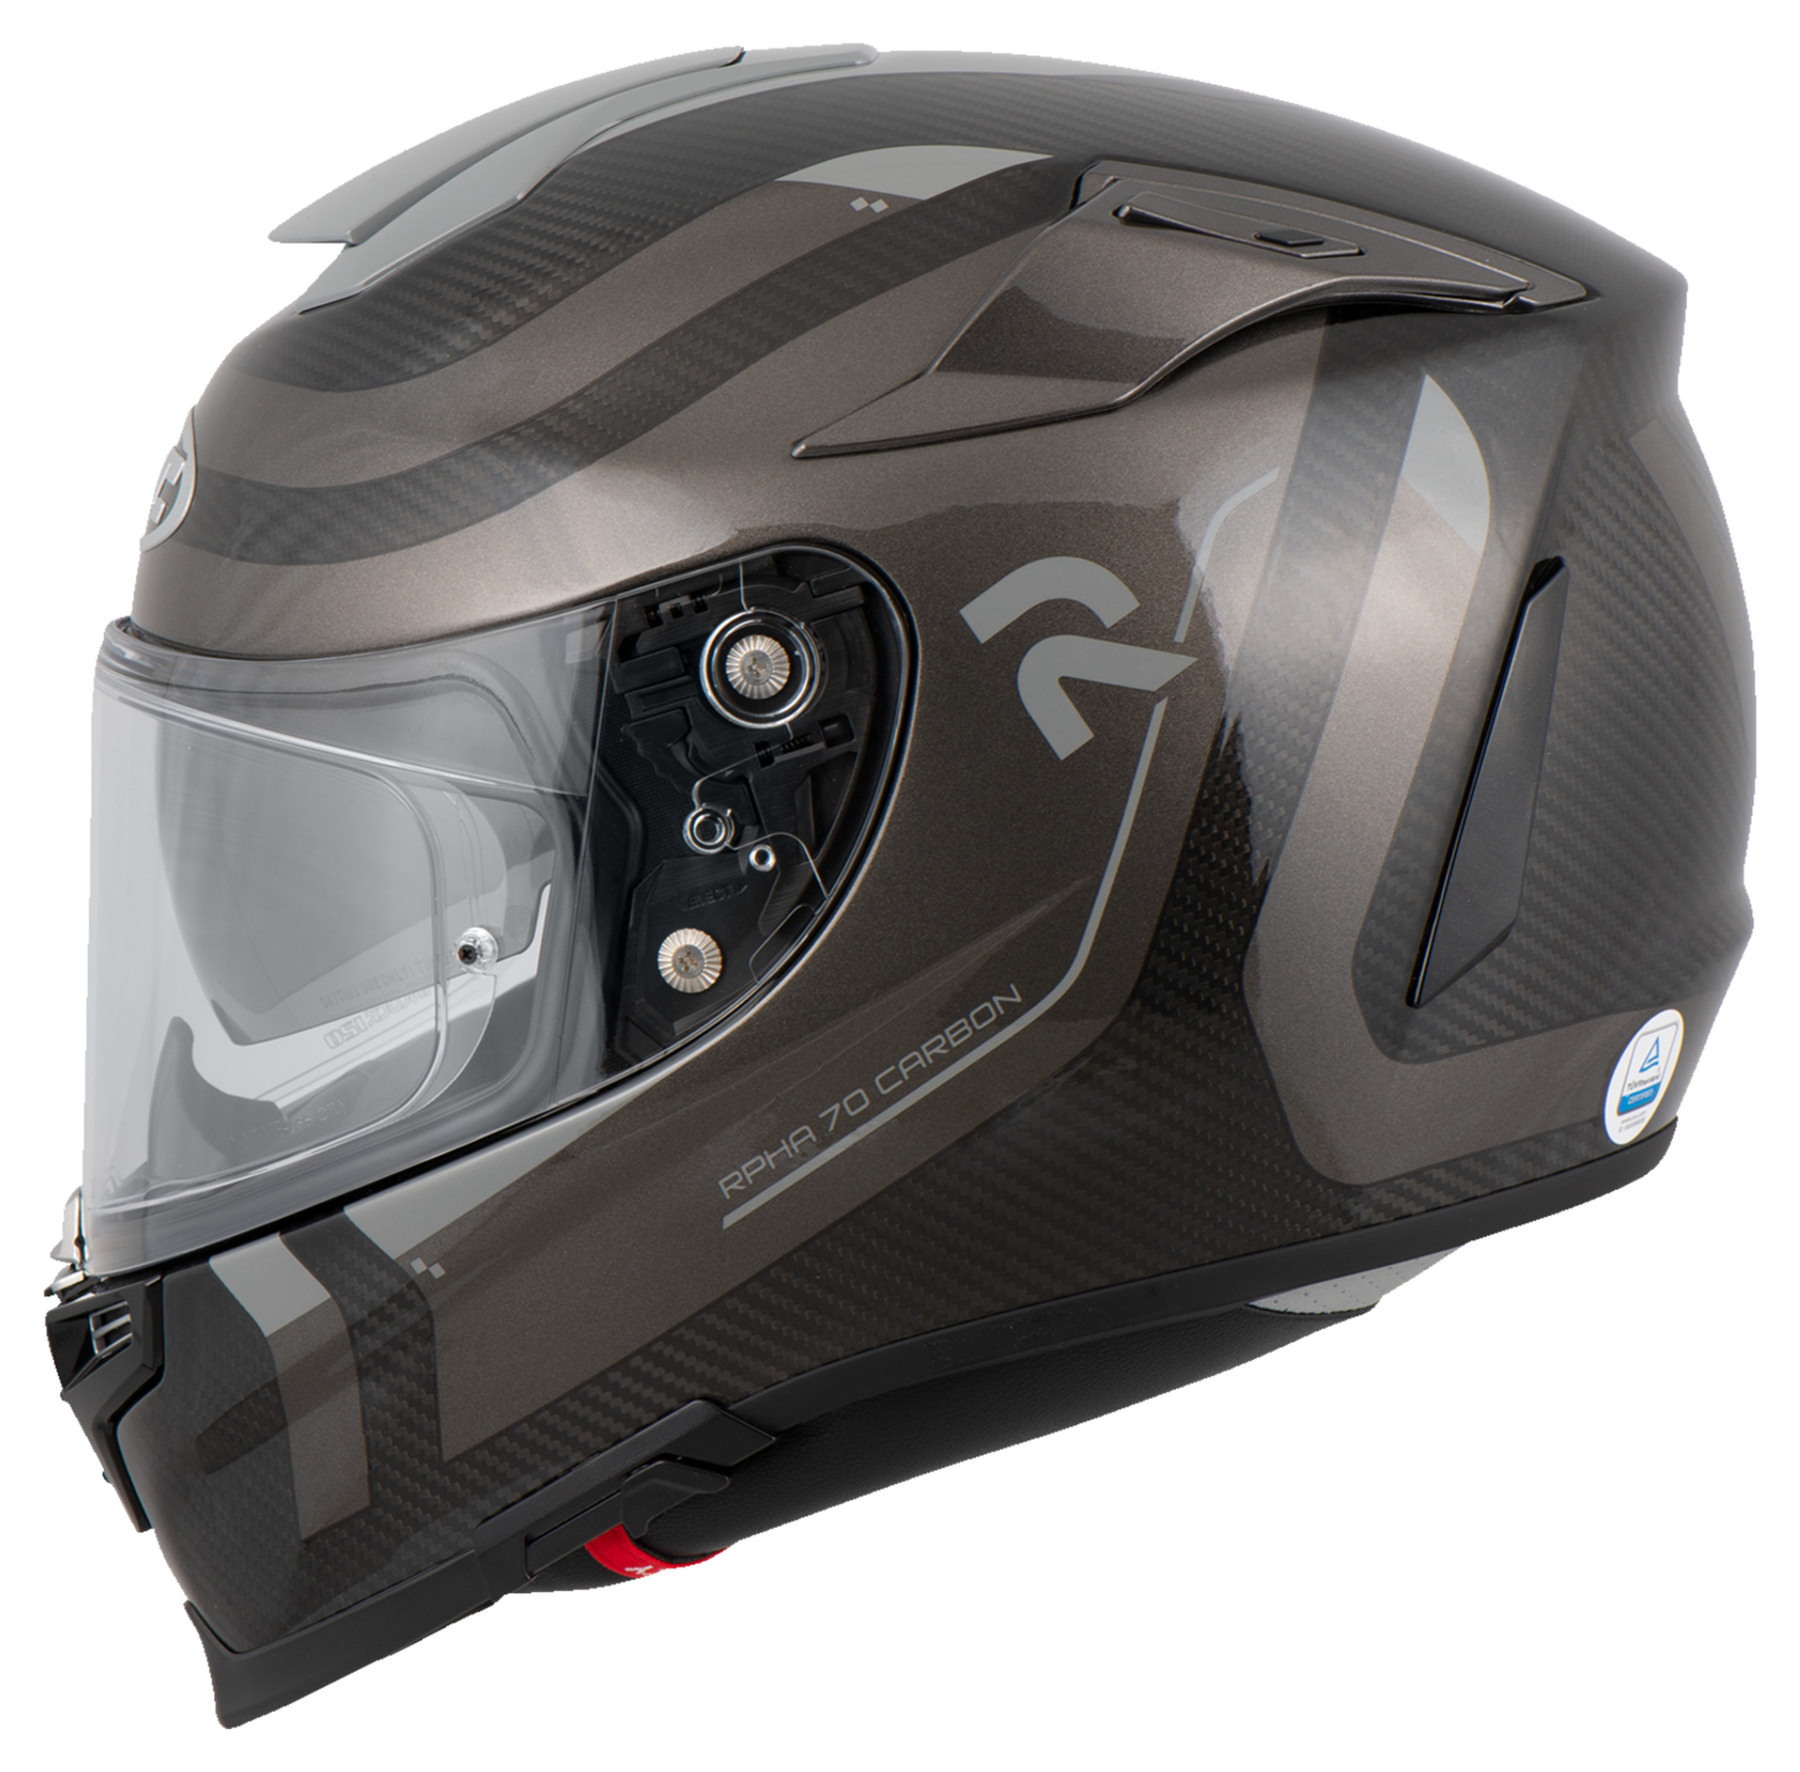 Nouveau gratuite! Livr HJC RPHA 70 Carbon Solid Gris Full Face Helmet Casque 